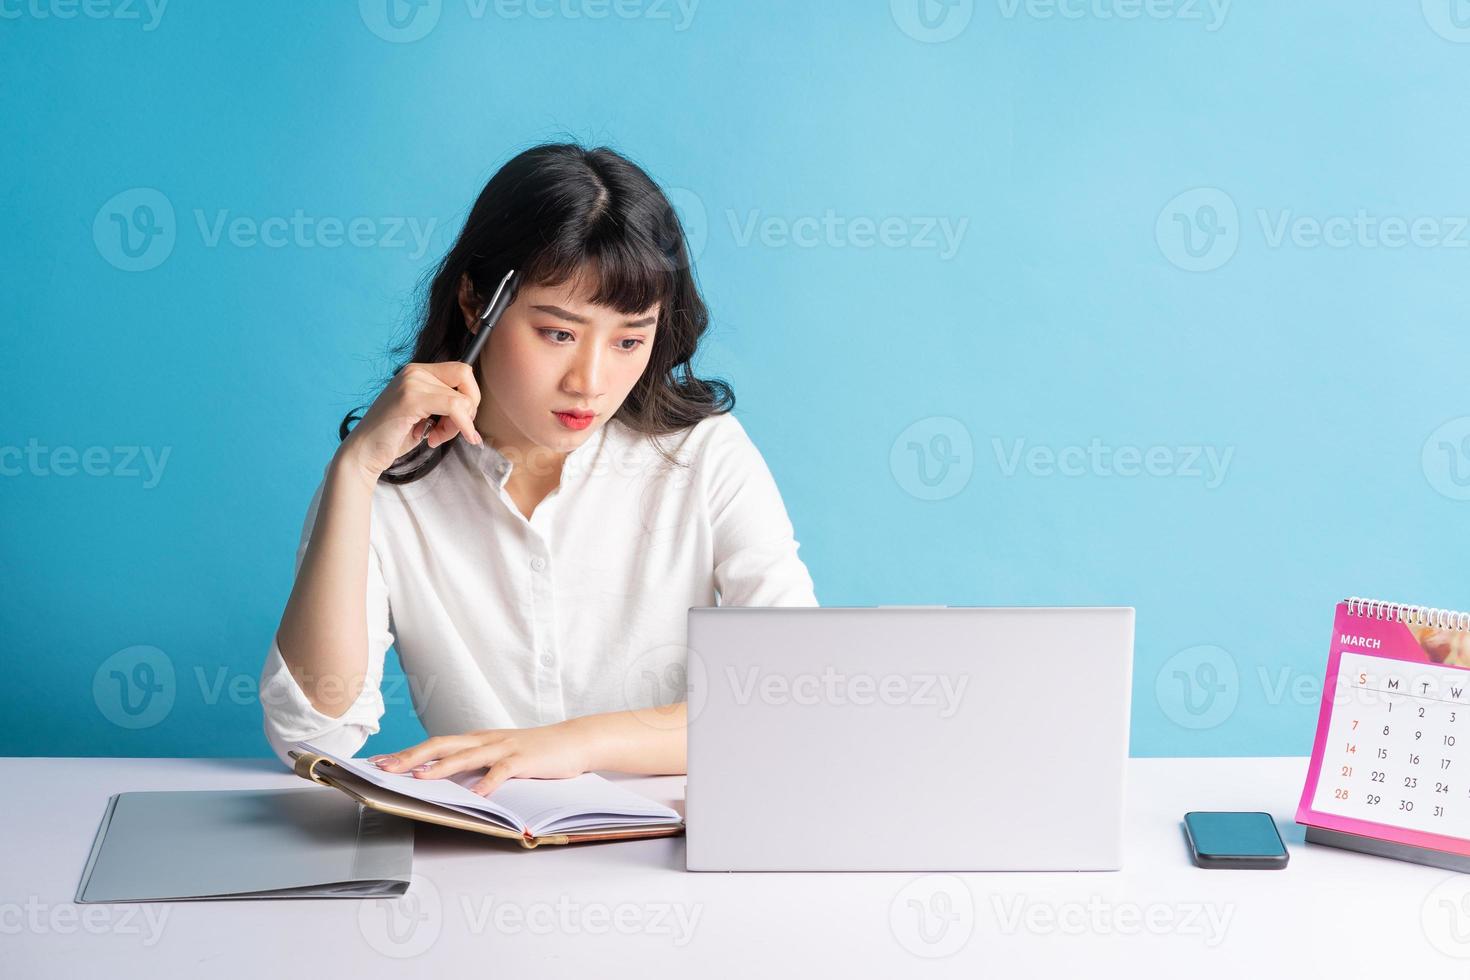 jovem asiática trabalhando sobre fundo azul foto